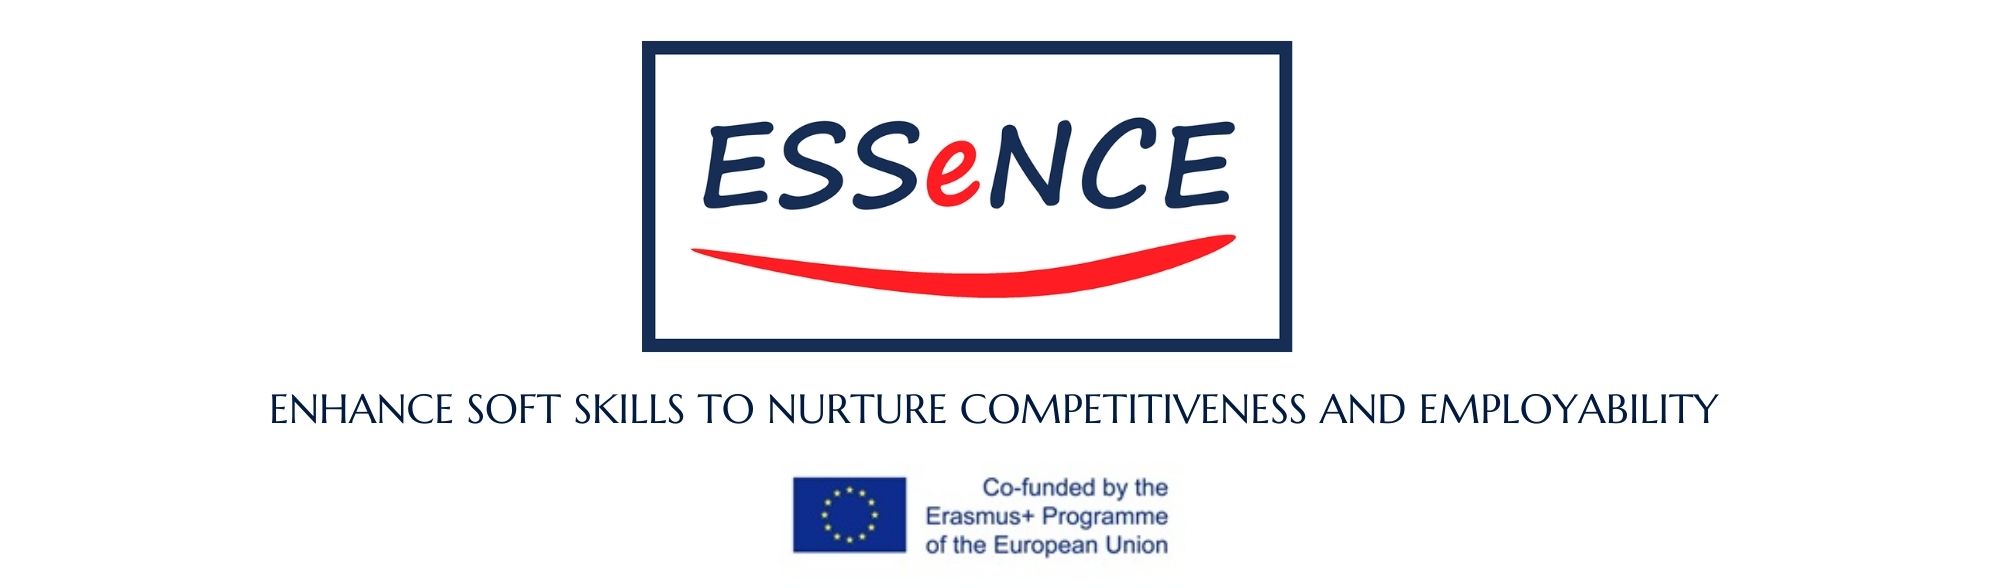 Essence i logotyp UE